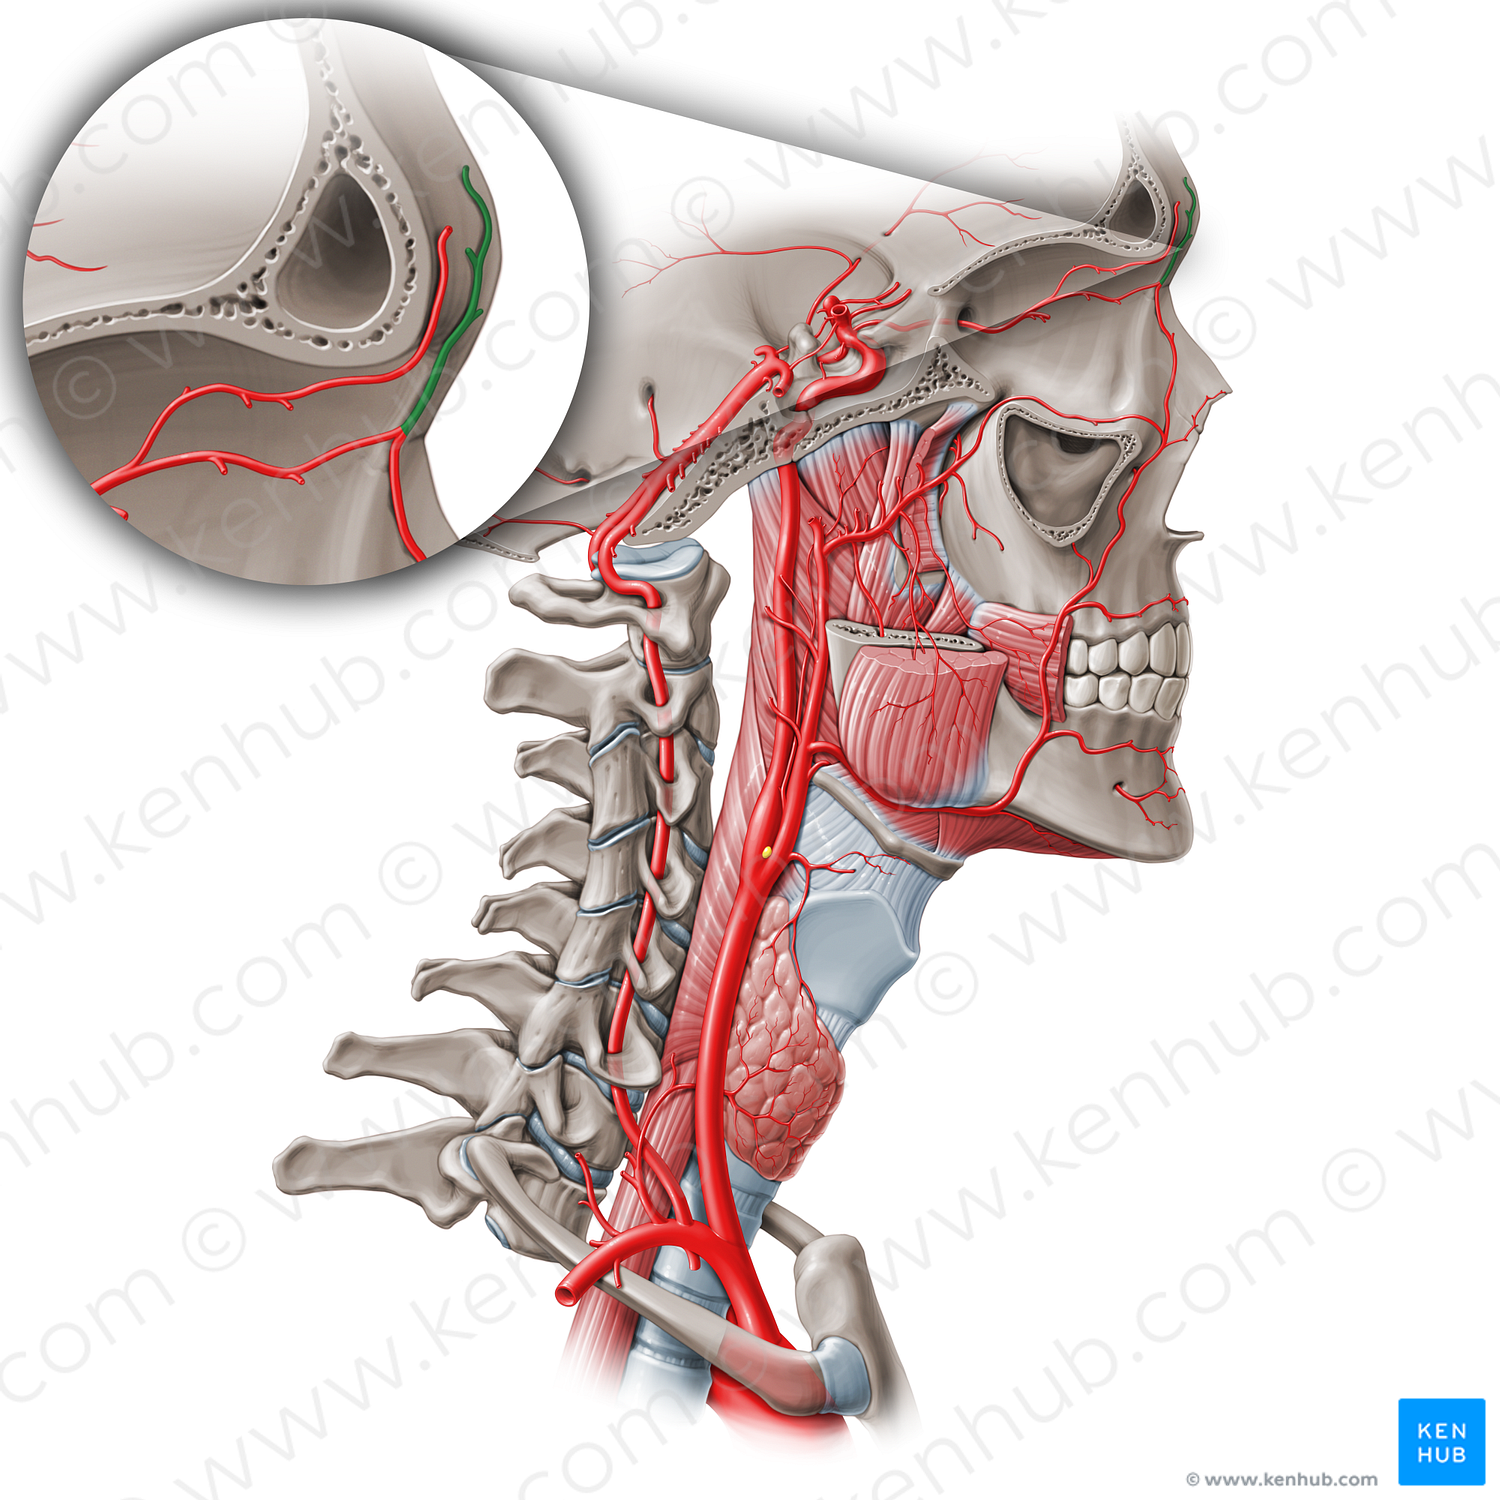 Supratrochlear artery (#1881)